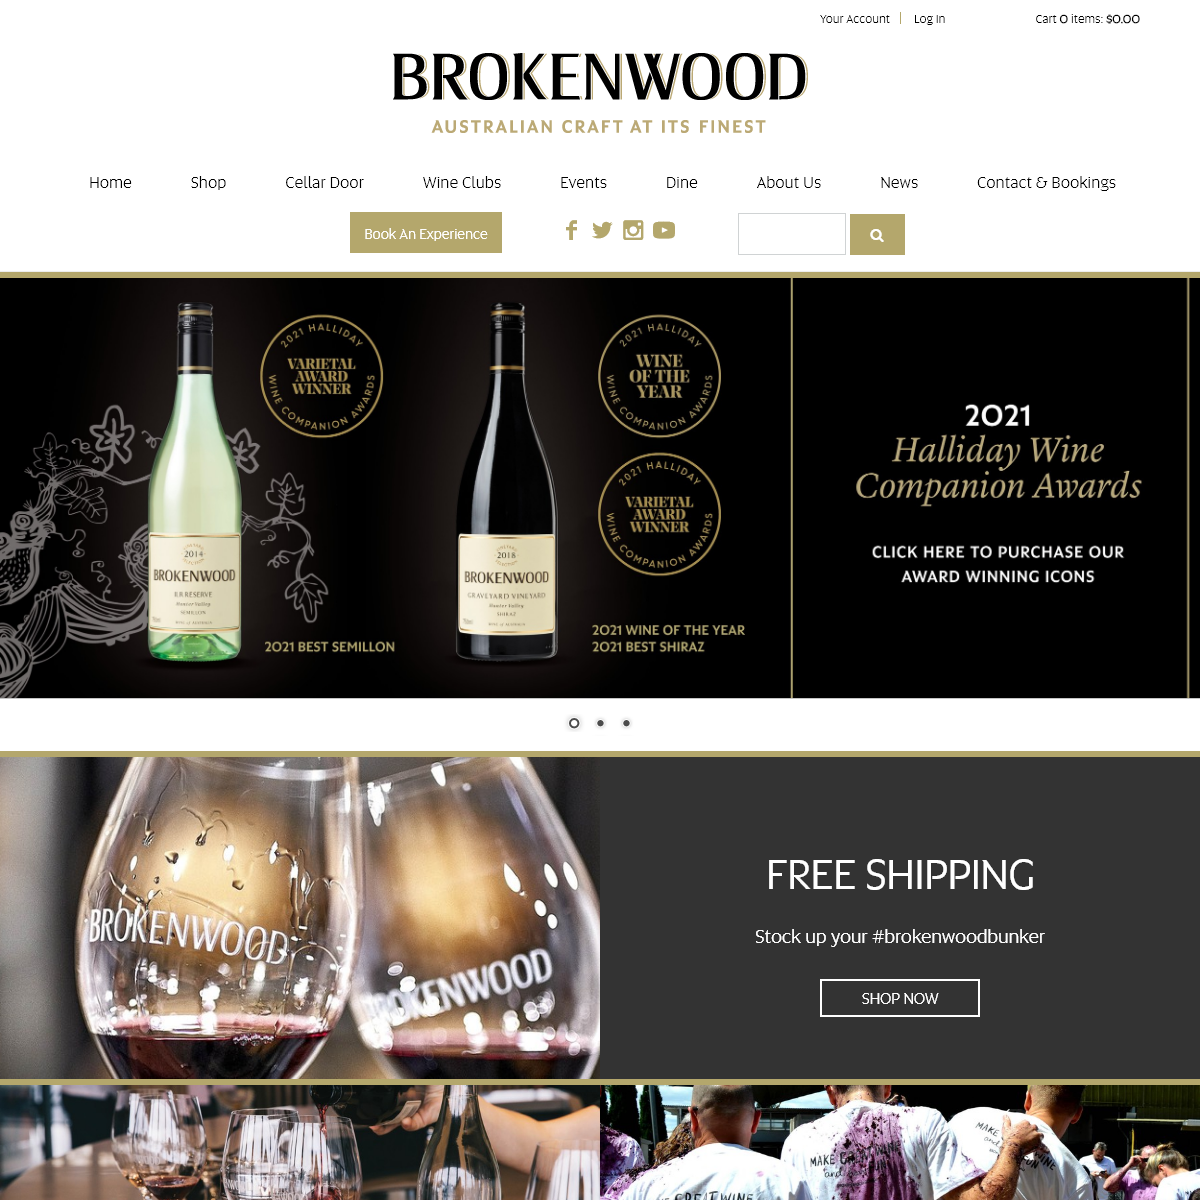 A complete backup of brokenwood.com.au